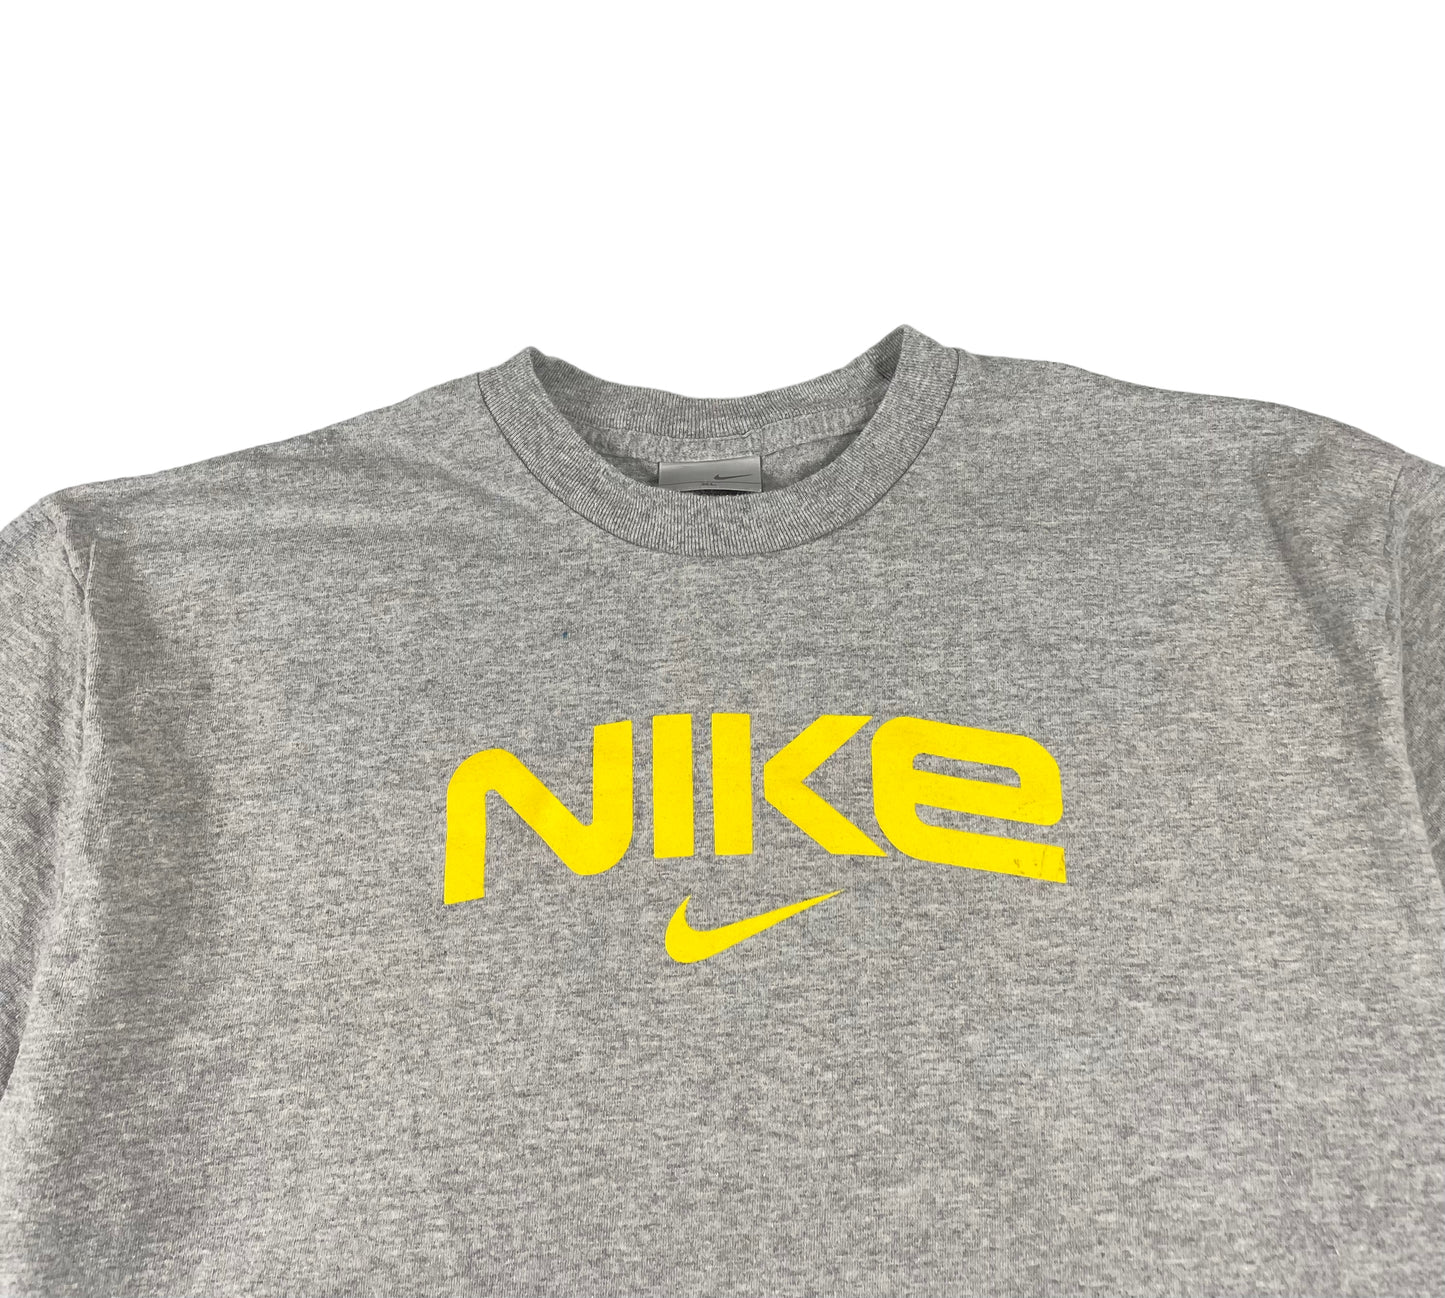 2000s Vintage Nike Grey/Yellow  T Shirt (Large)